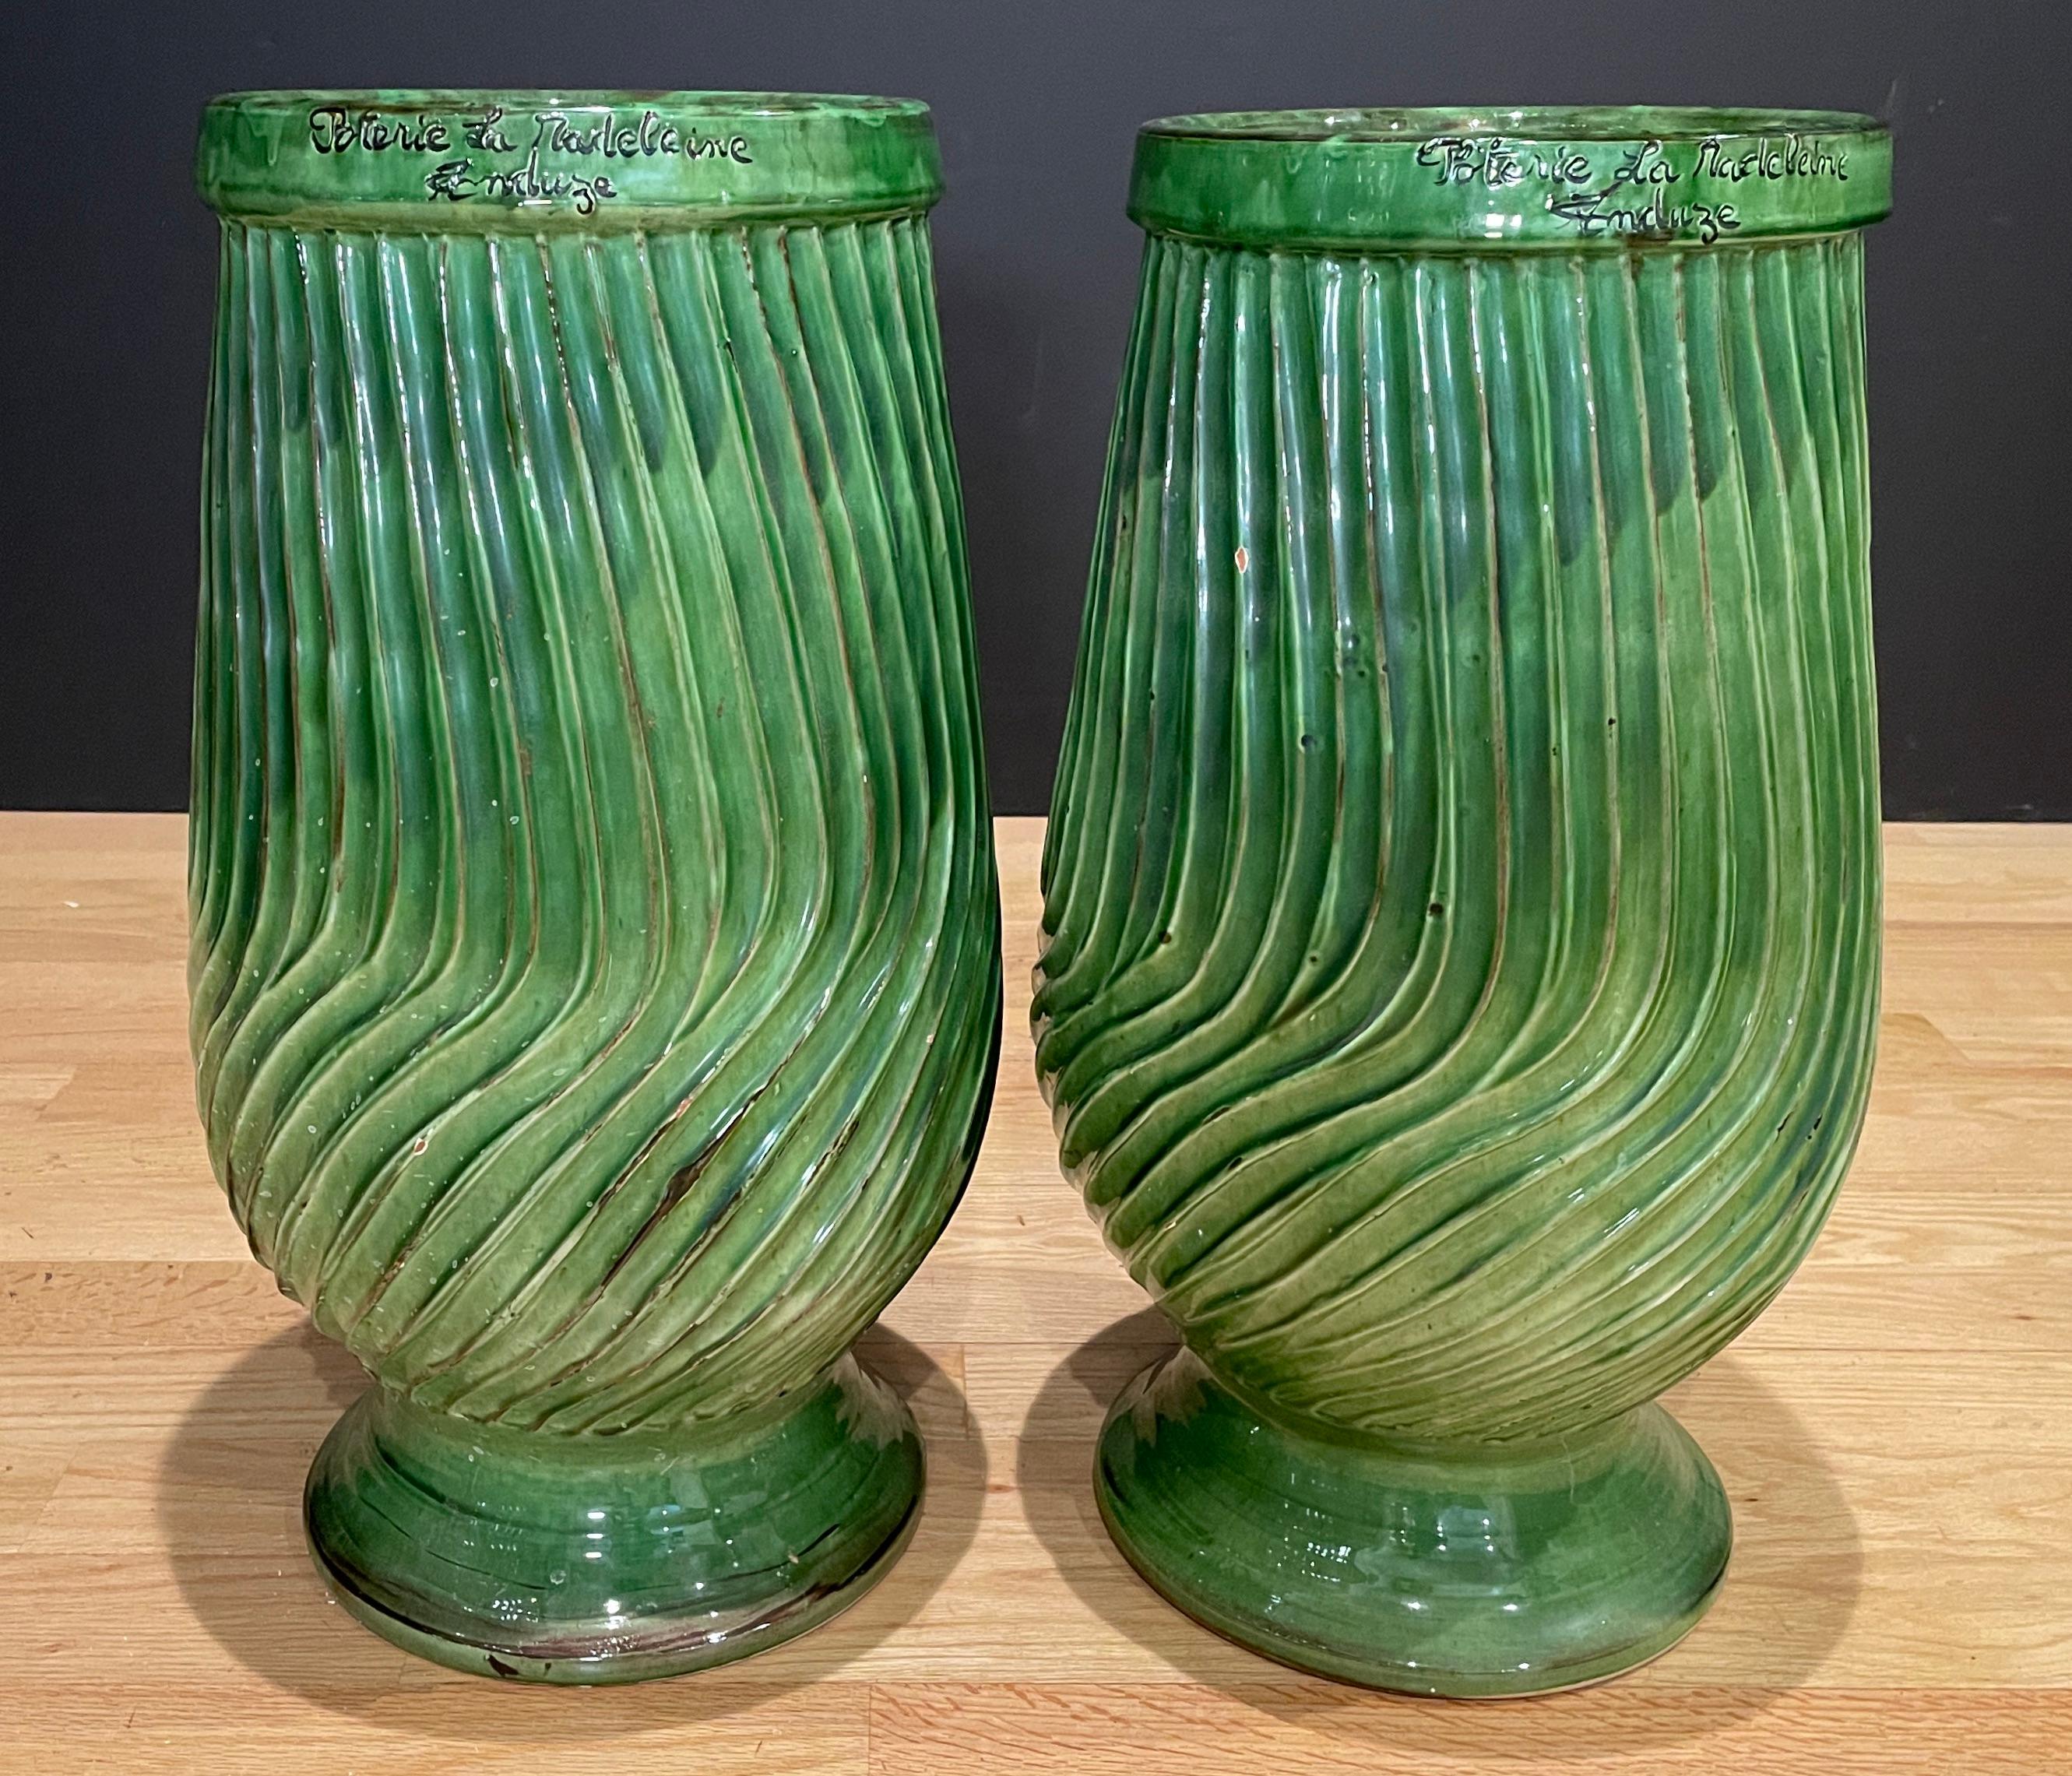 Paar gestreifte Anduze-Töpfe, grün glasiert, in traditioneller Ölkrugform. Schöne Vasen aus Anduze in traditionellem Grün. Handgefertigt in Anduze (Frankreich). Öffnung 8,5